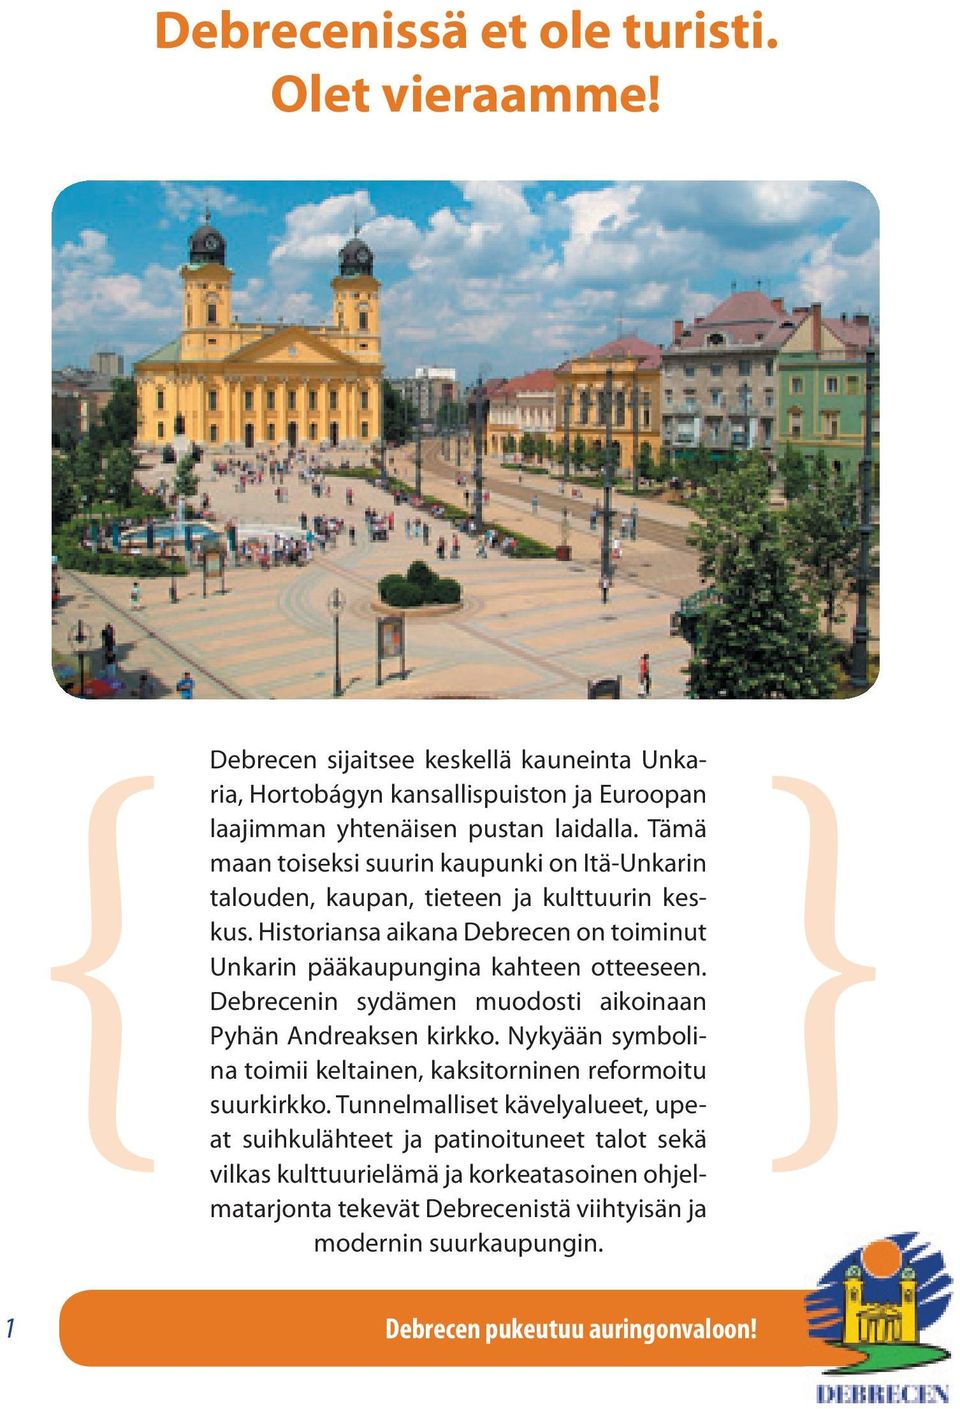 Debrecenin sydämen muodosti aikoinaan Pyhän Andreaksen kirkko. Nykyään symbolina toimii keltainen, kaksitorninen reformoitu suurkirkko.